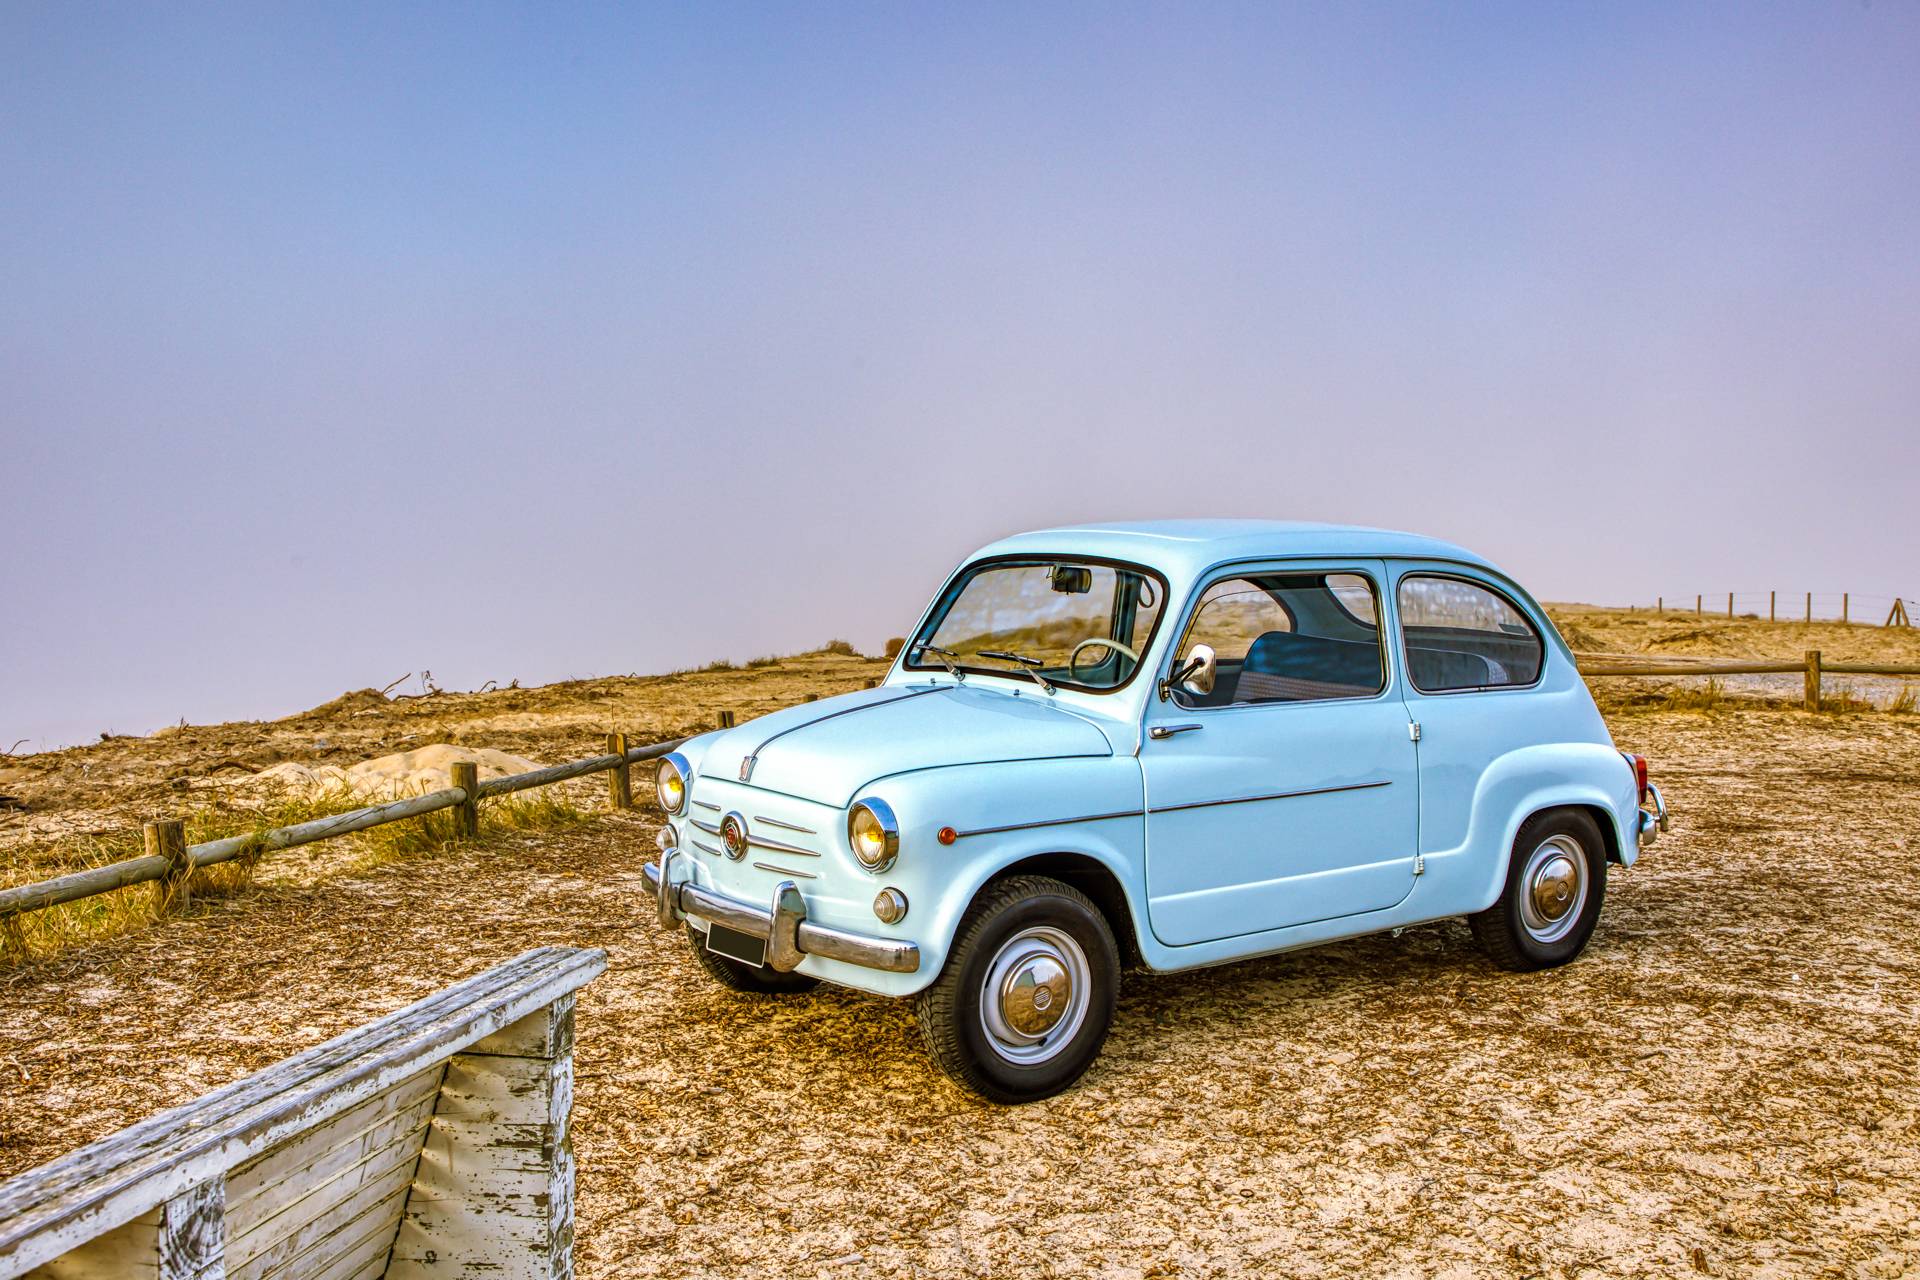 FIAT 600 (1960) in vendita a 11.400 €